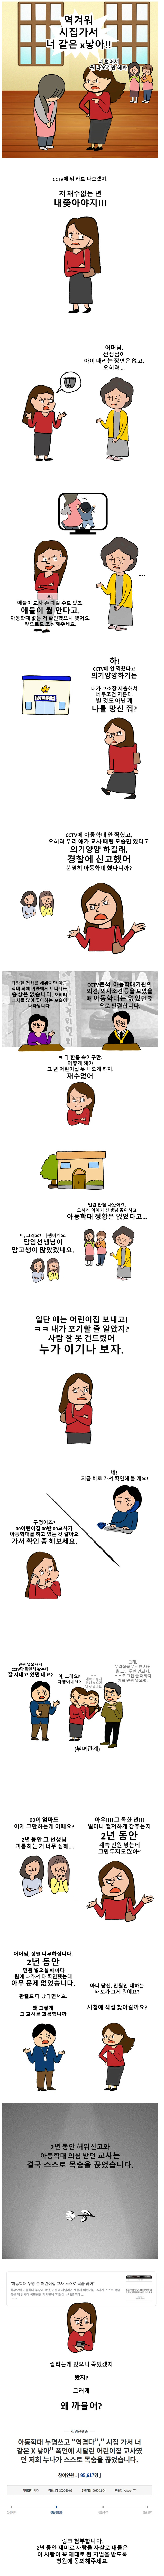 세종시 보육교사 자살 원인 만화.jpg